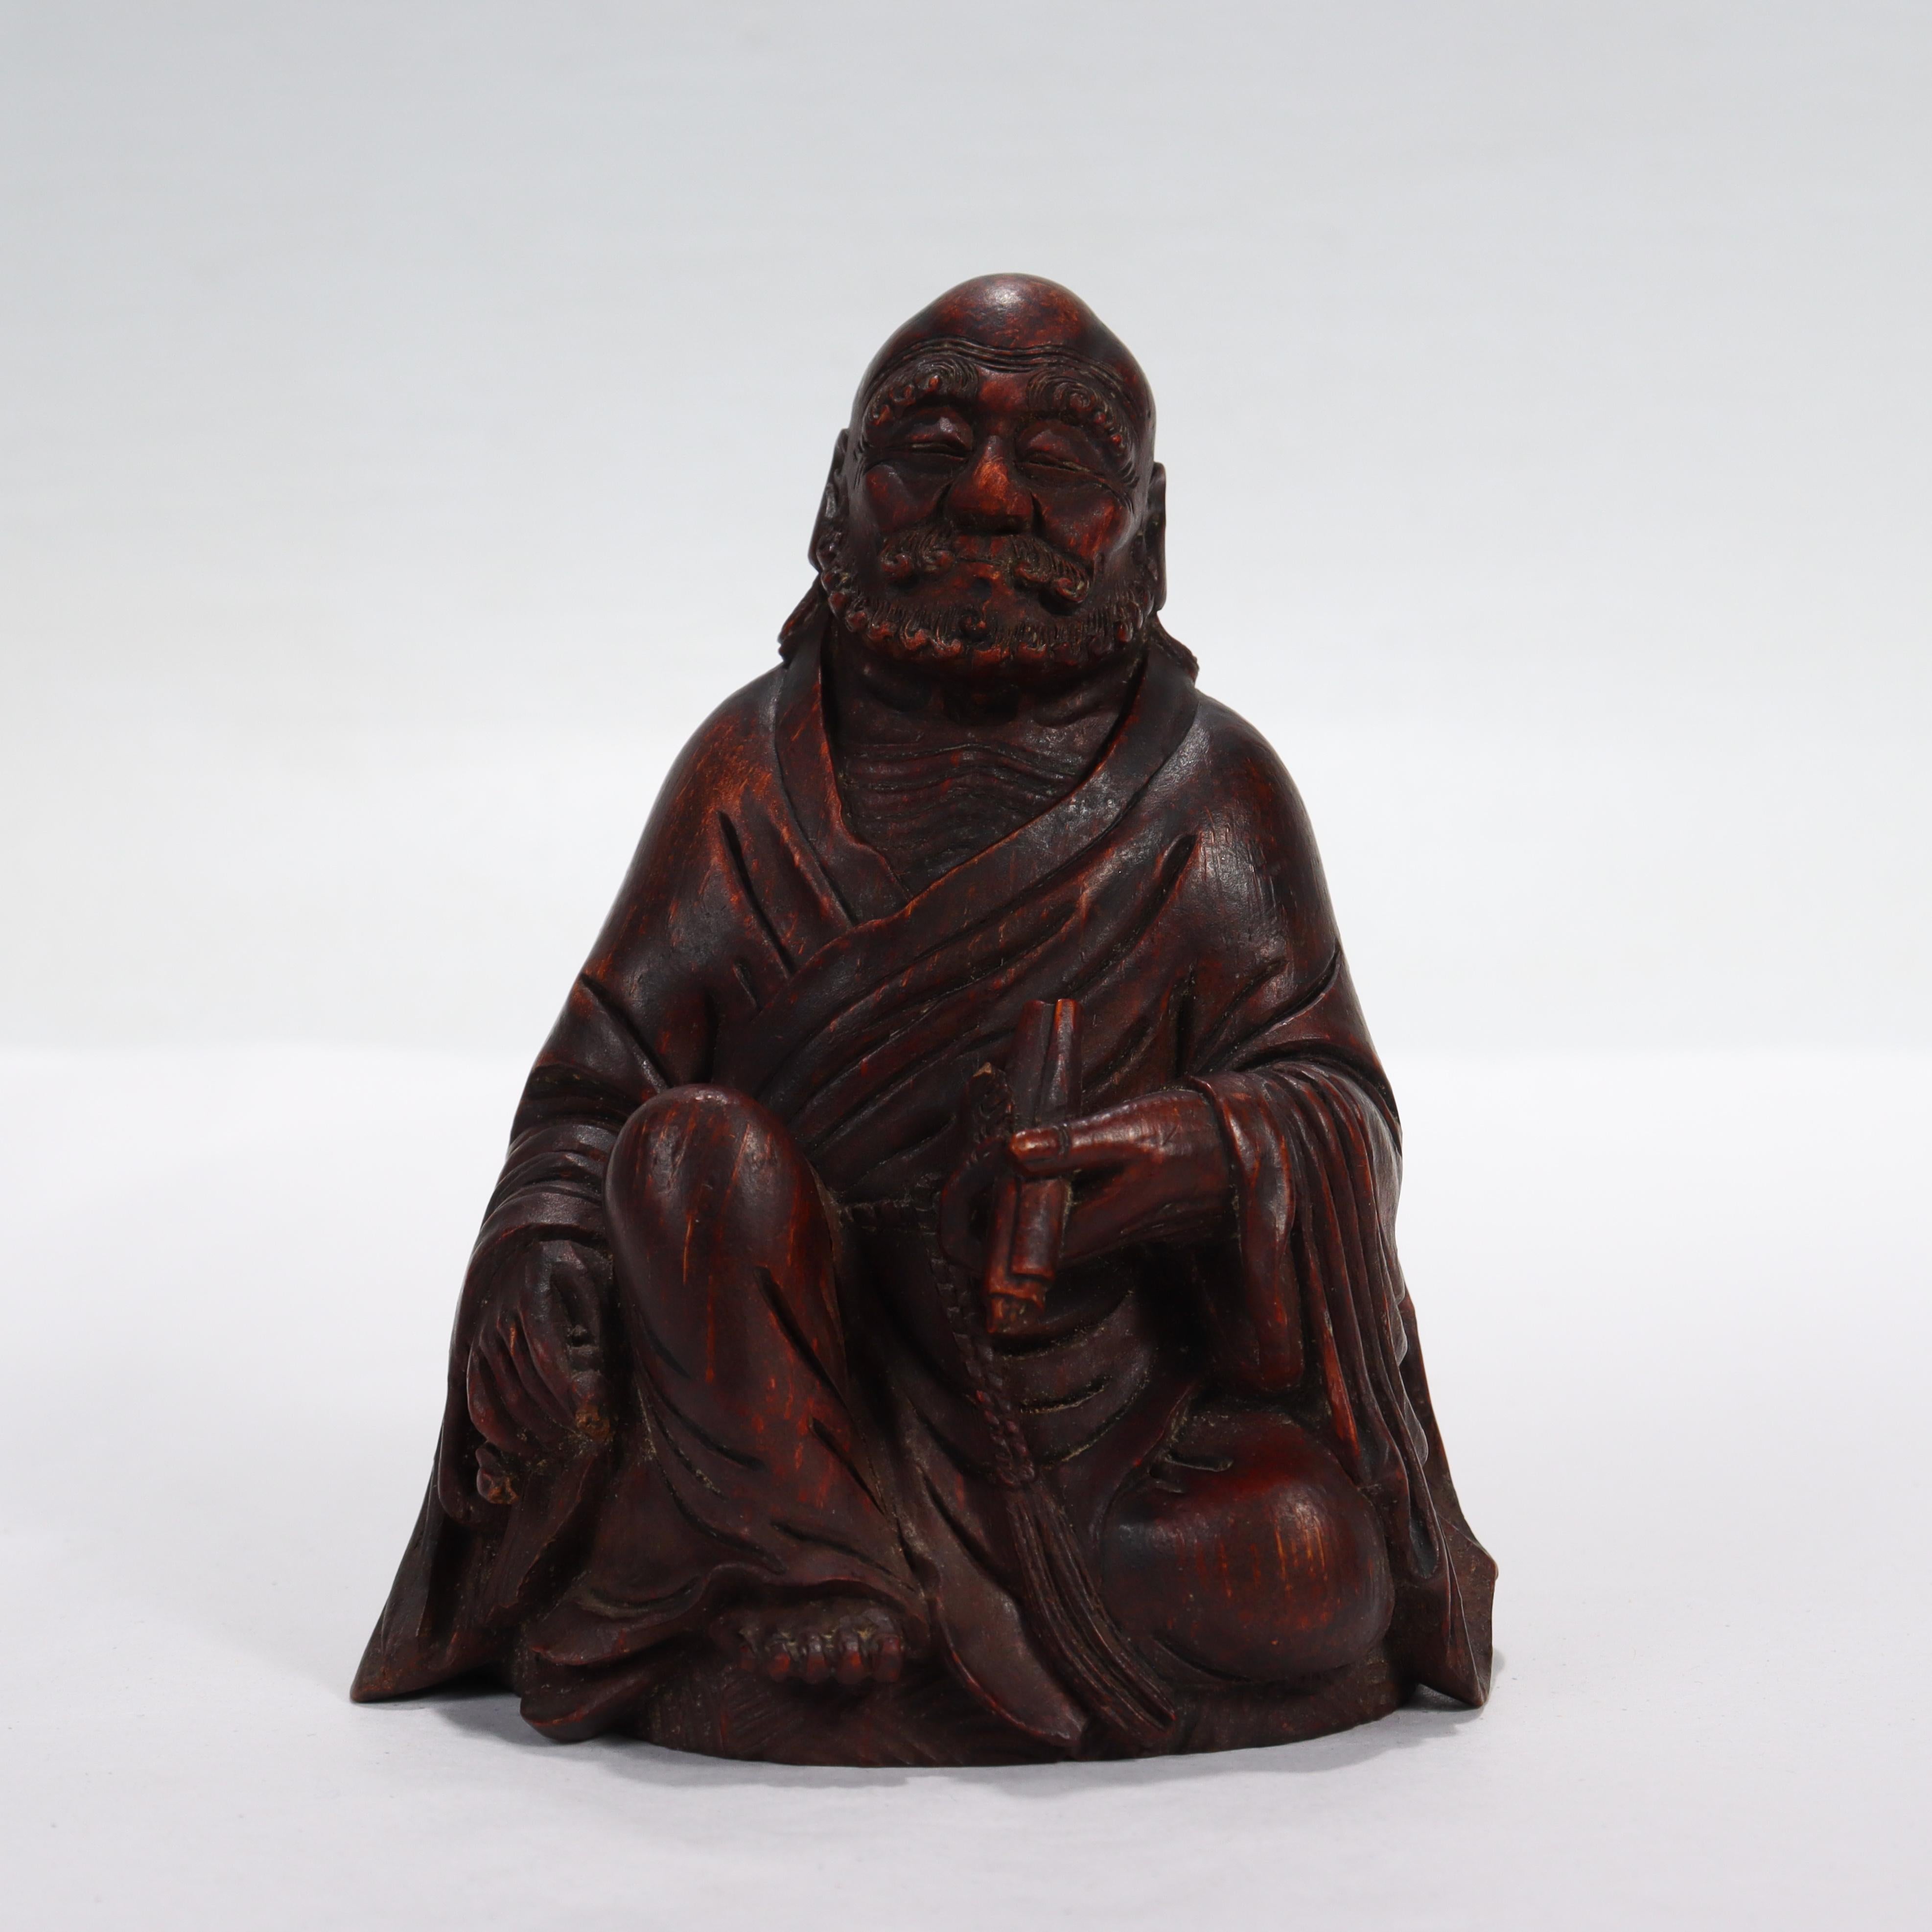 Eine japanische Holzfigur eines buddhistischen Mönchs.

In der Form eines sitzenden buddhistischen Mönchs. 

In der linken Hand hält er eine Schriftrolle, in der rechten Hand eine Mala/Juzu (Rosenkranz). Ein Teil der Mala ist abgebrochen.

Einfach